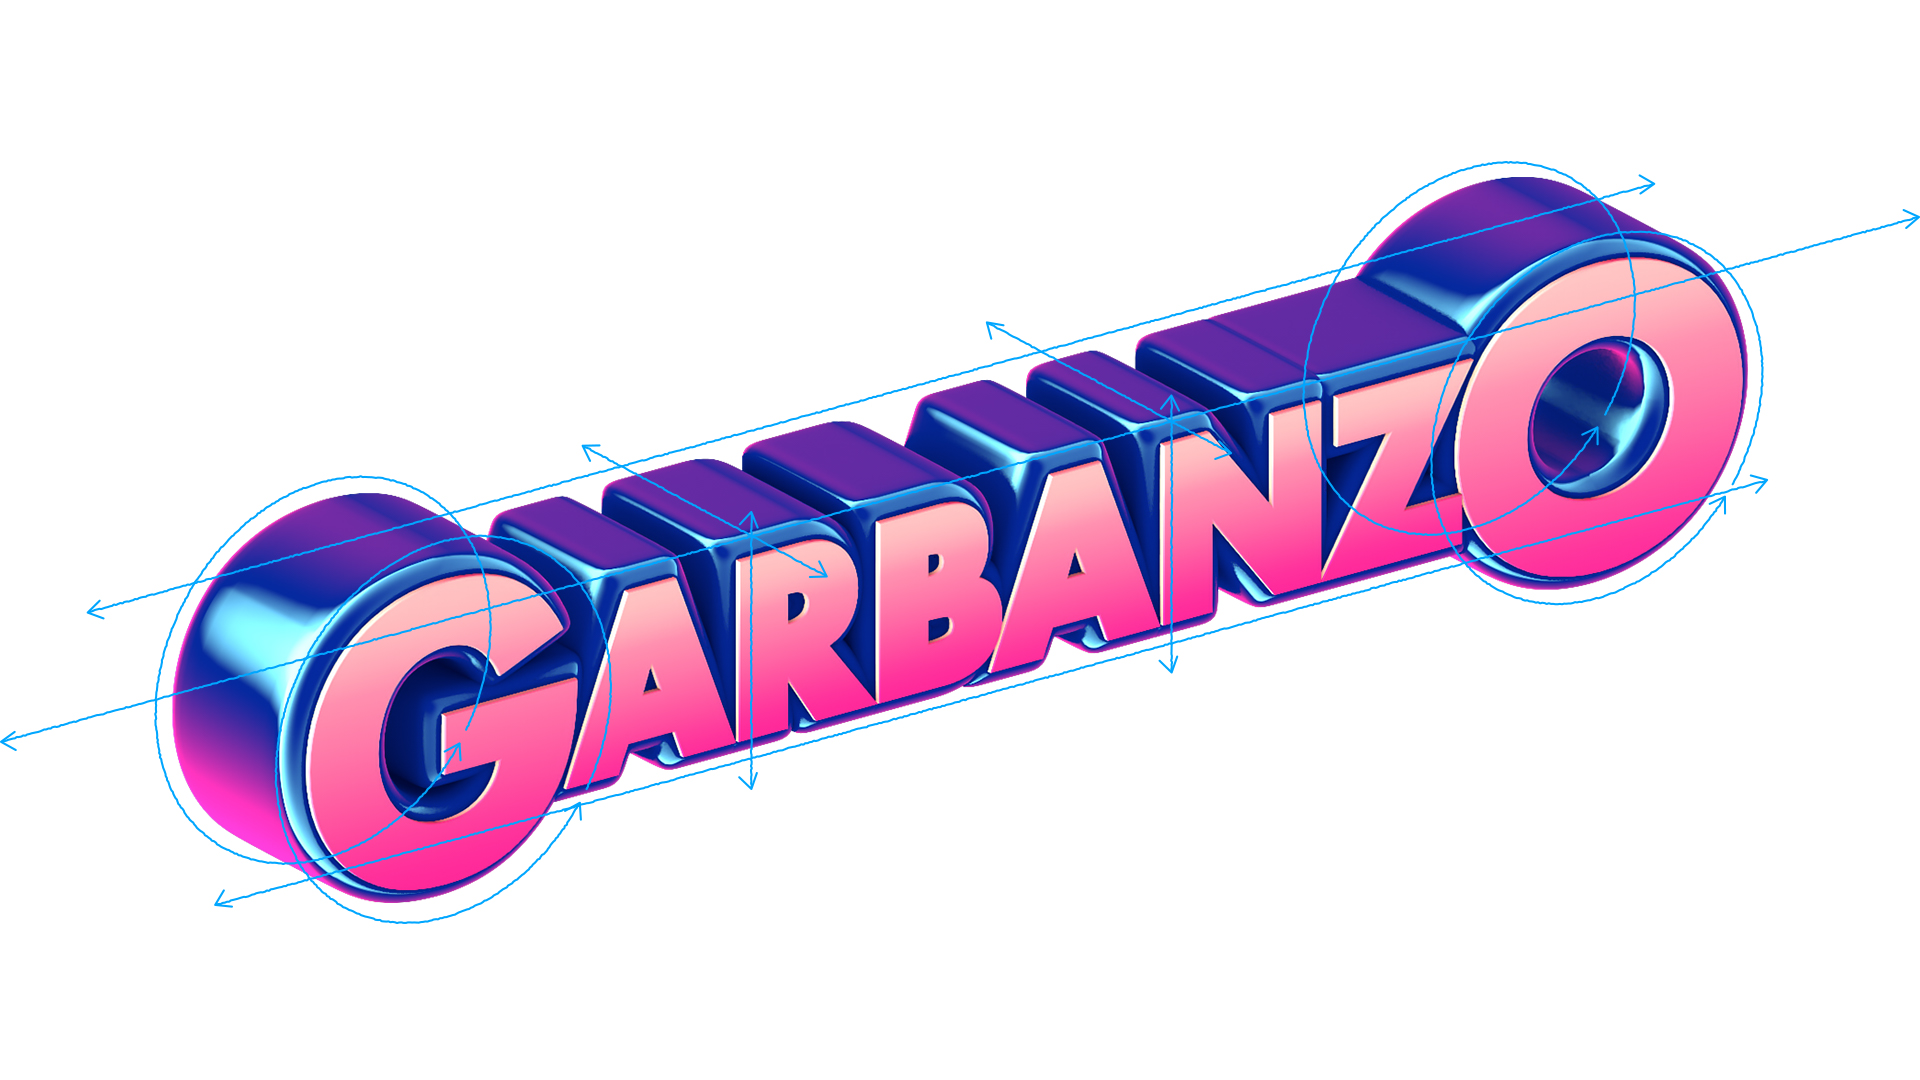 Garbanzo Rebrand 206